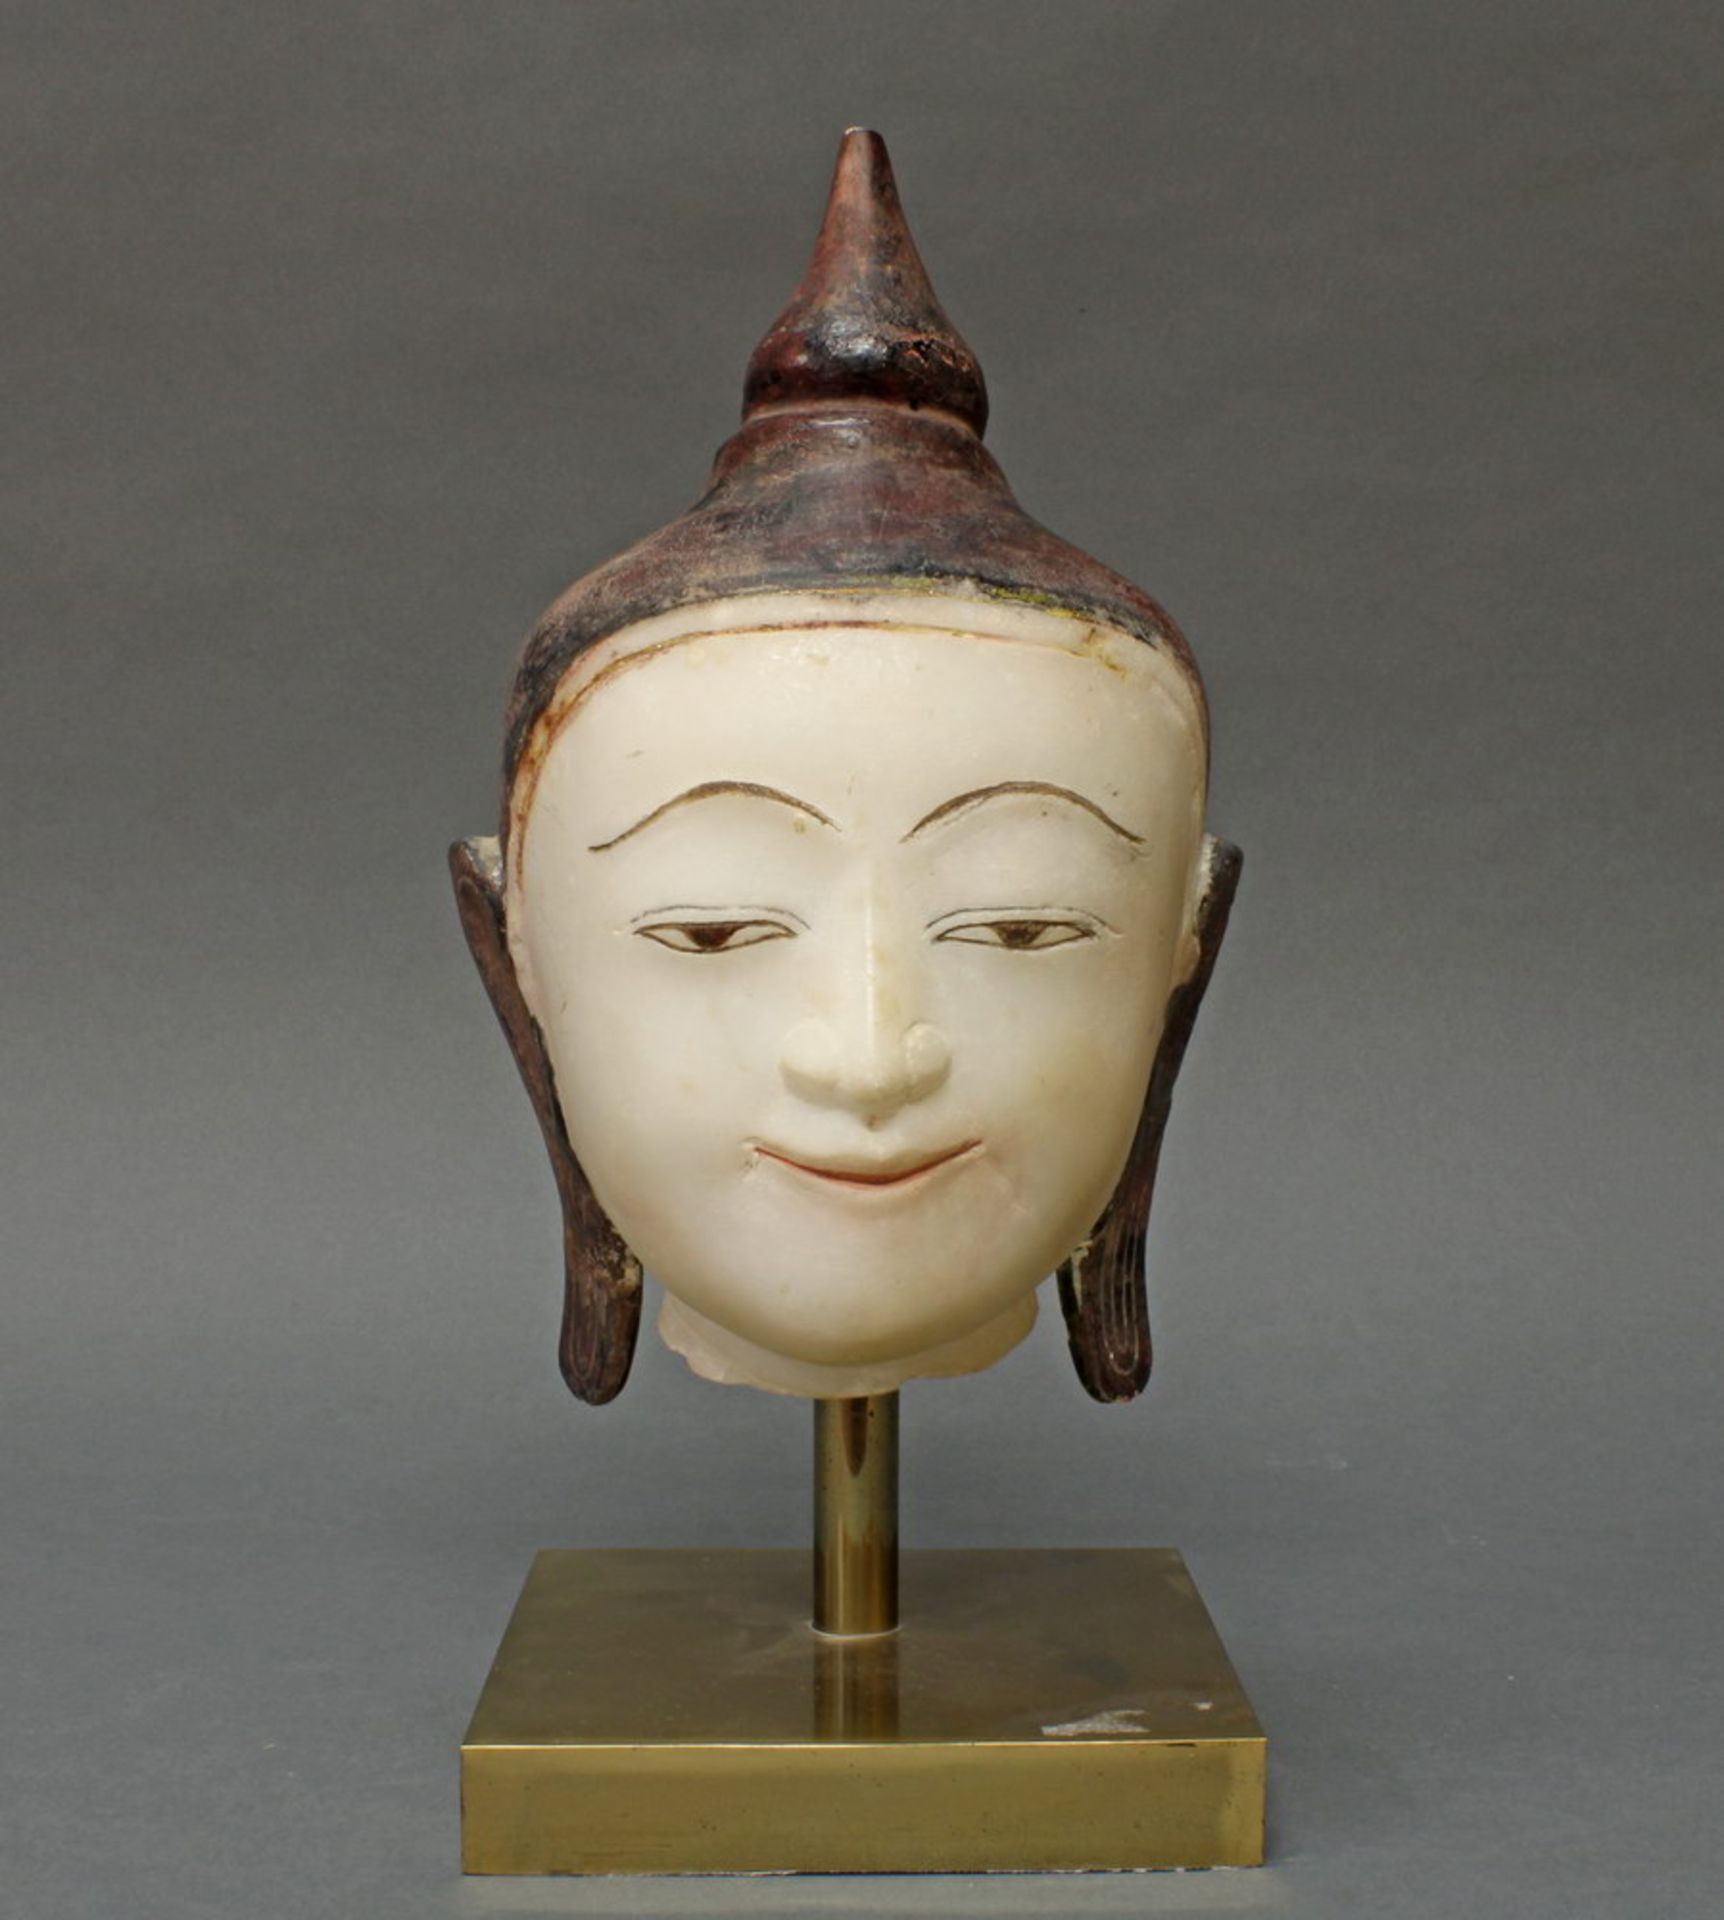 Buddhakopf, Burma, spätes 19. Jh., Alabaster, partiell farbig bemalt, auf späterem Messingsockel, 28